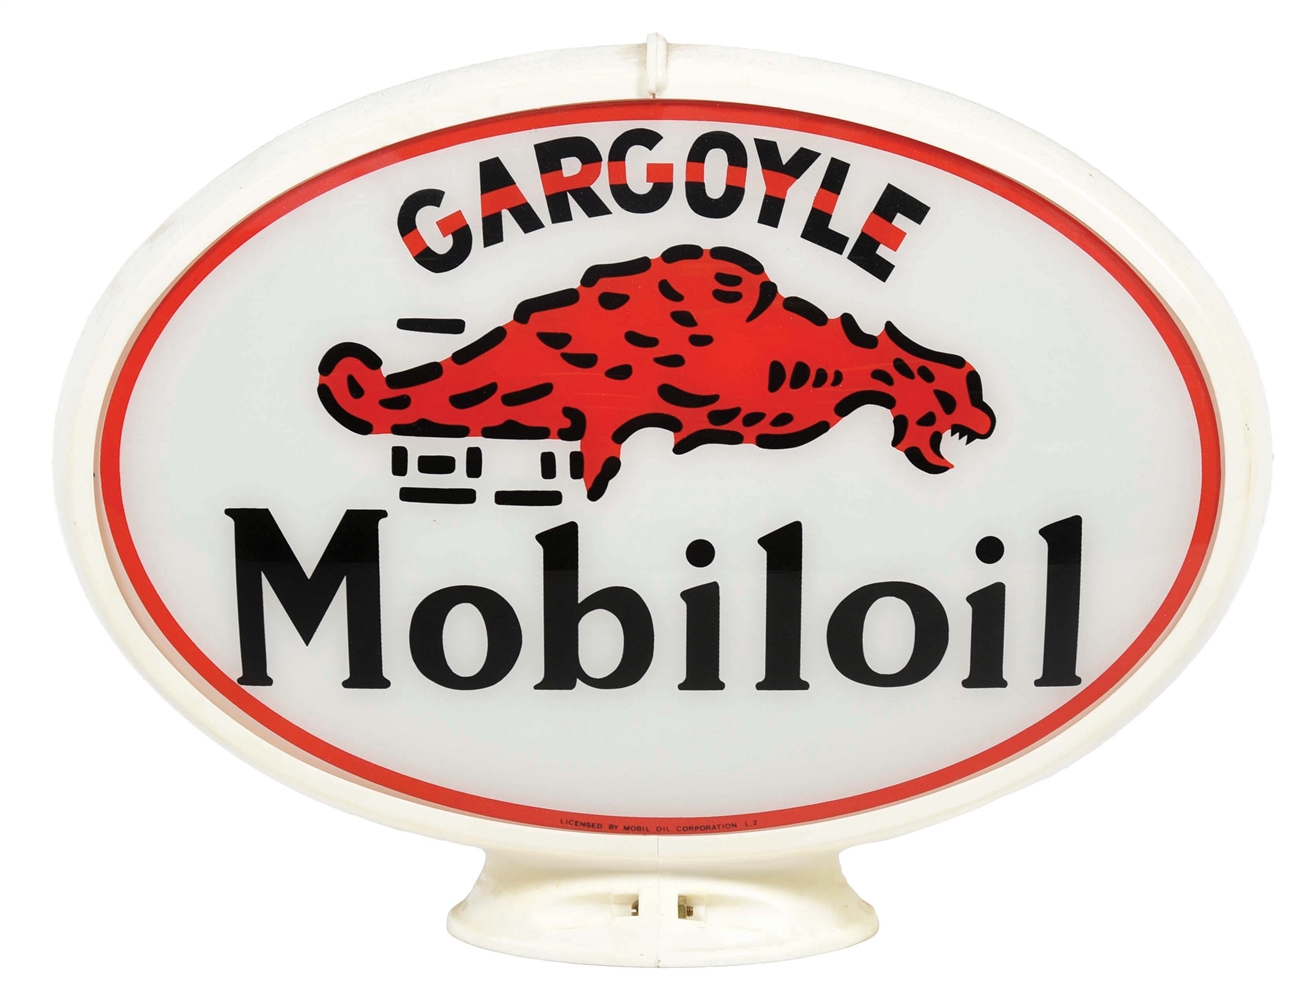 GARGOYLE MOBILOIL GLOBE ON PLASTIC BODY.